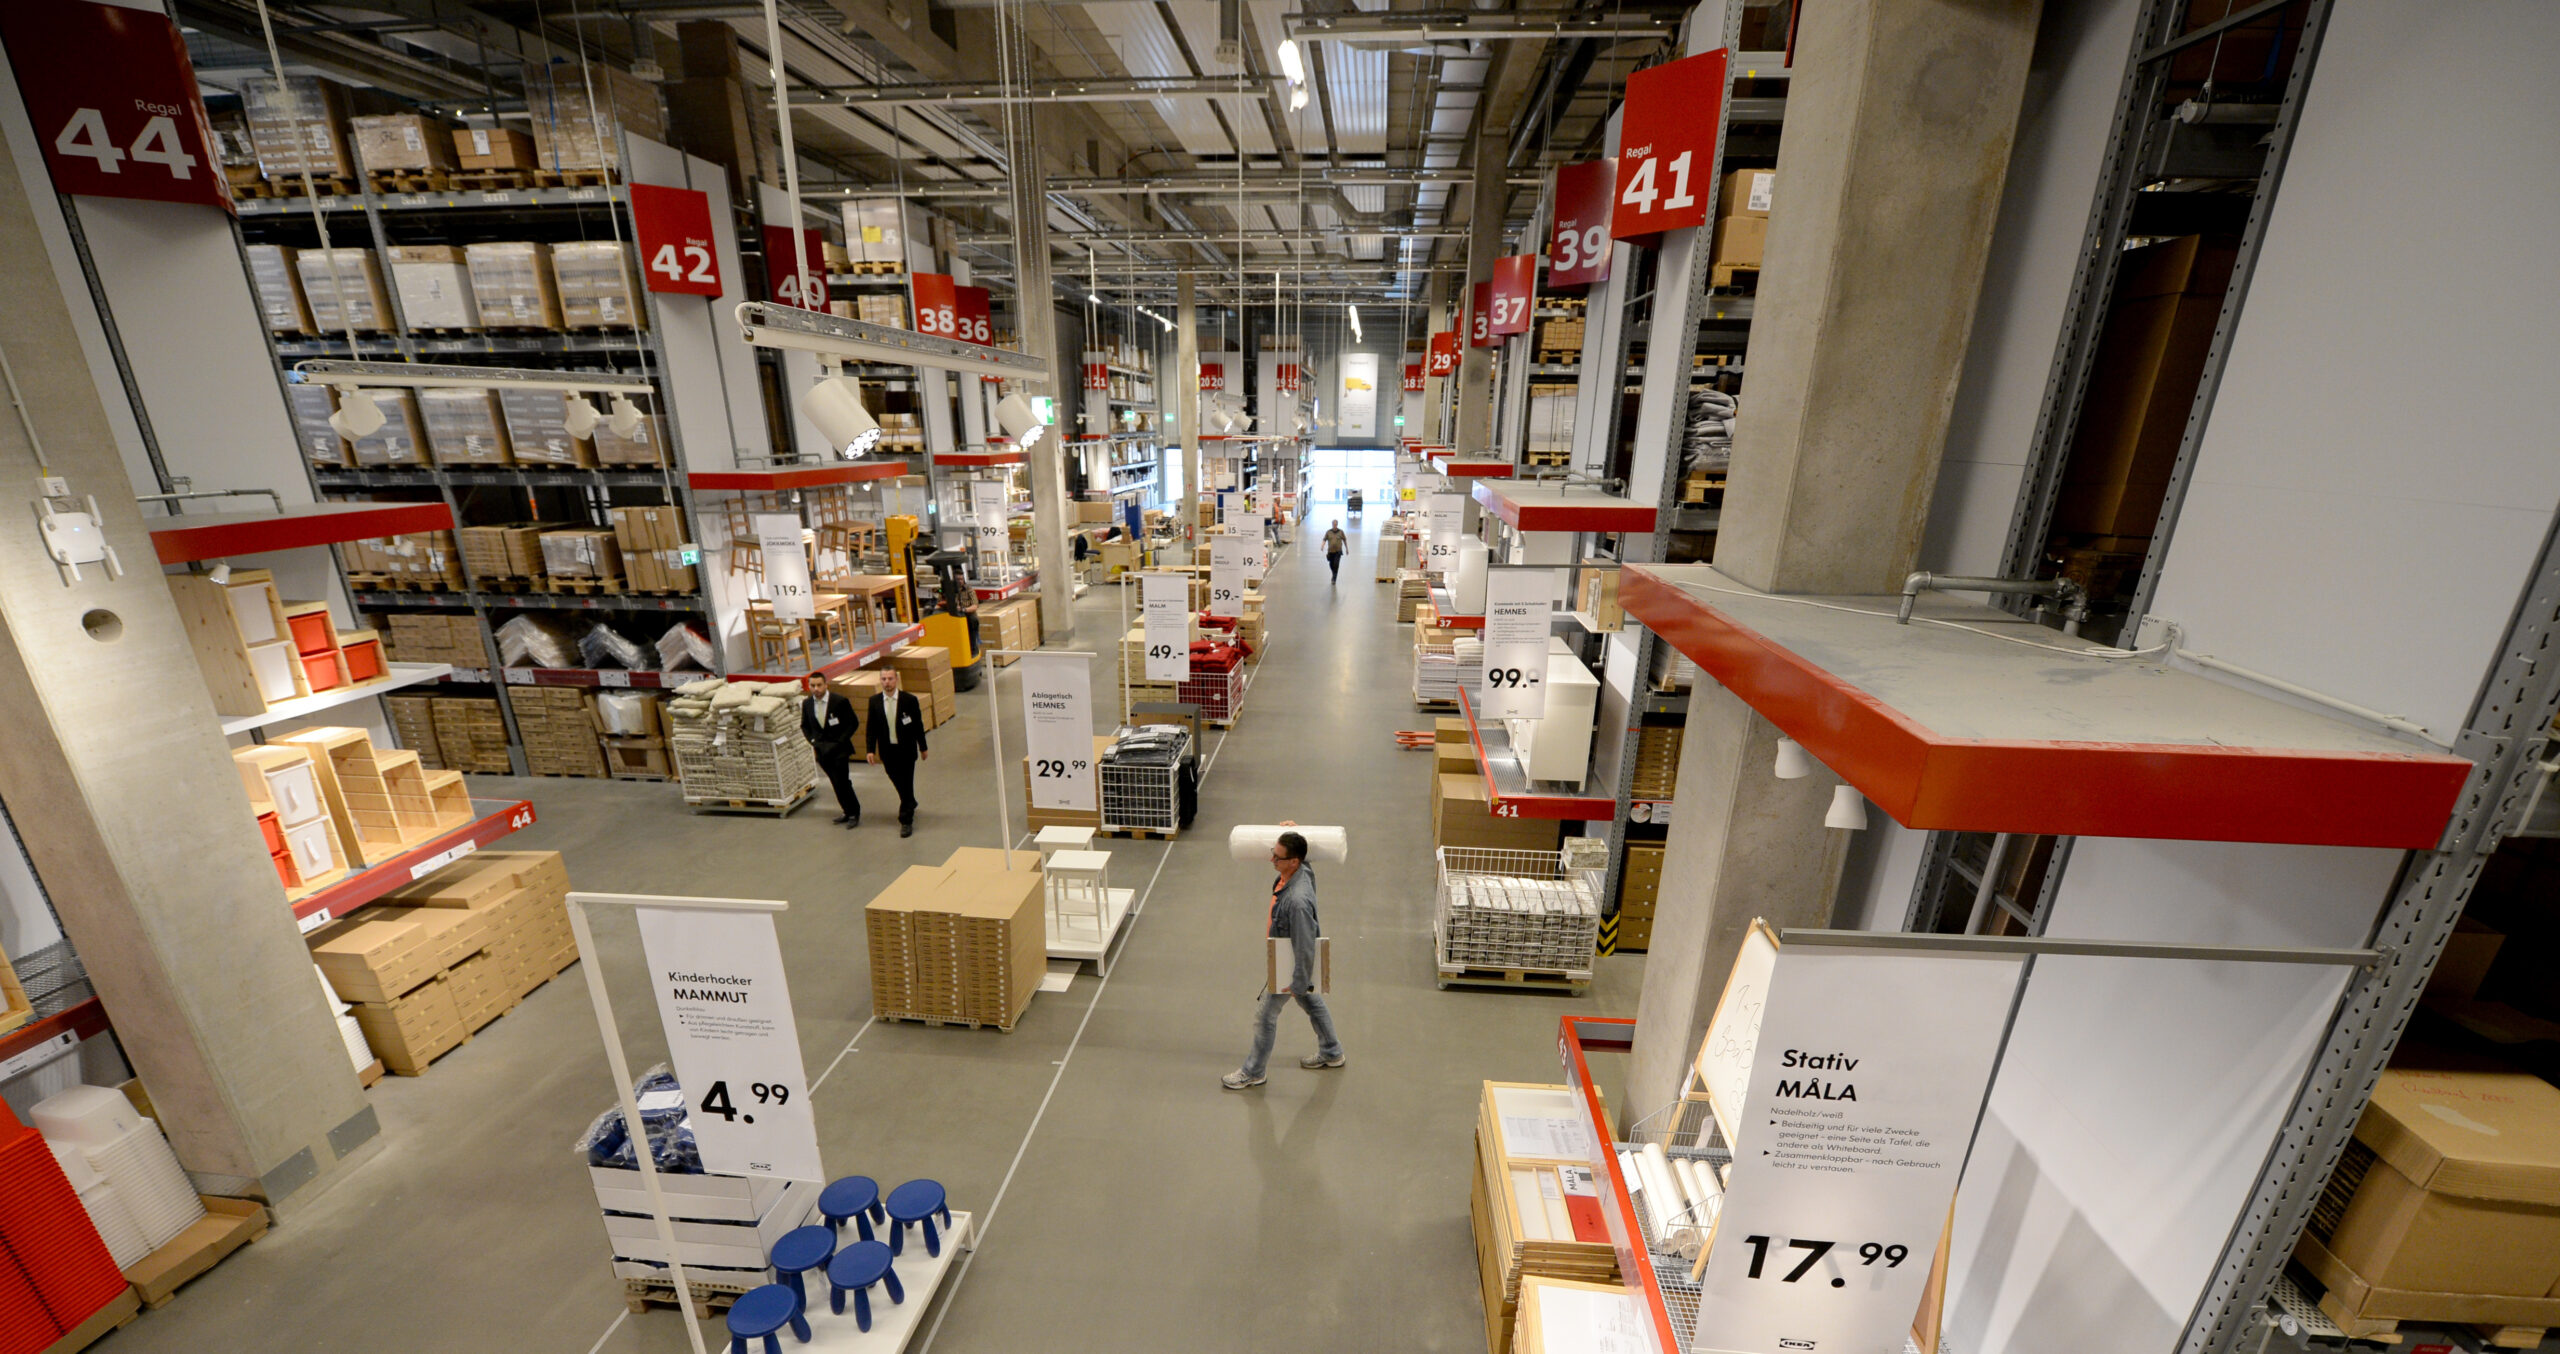 Gut gefüllte Regale sind im Selbstbedienungsbereich eines IKEA-Einrichtungshauses zu sehen.